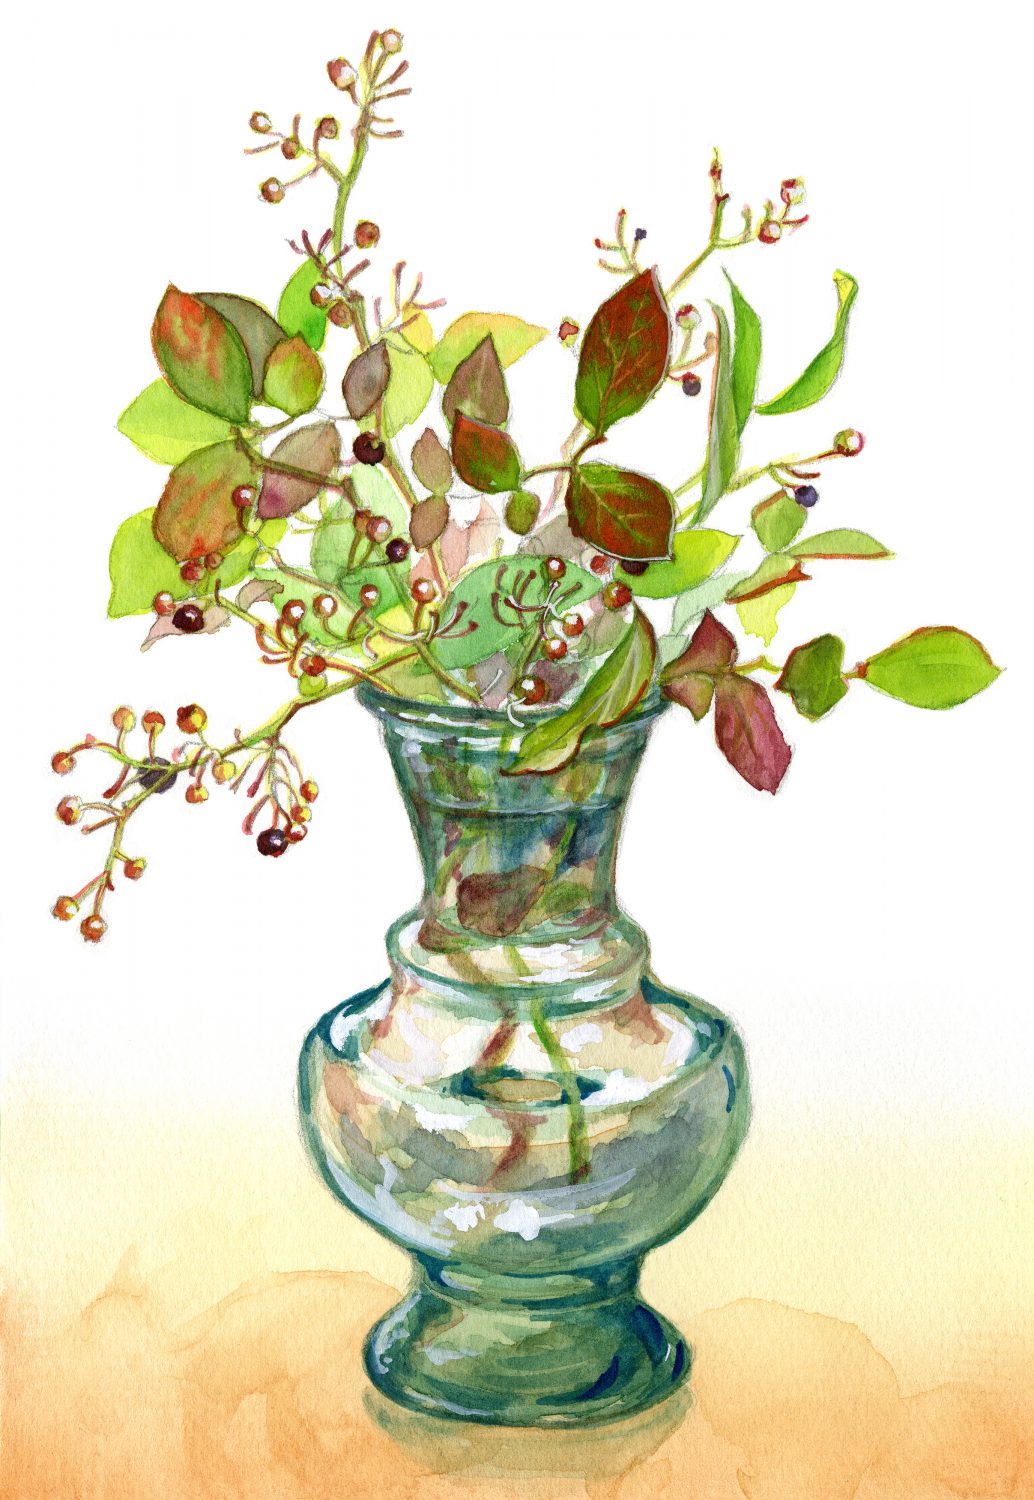 ブルーベリーの枝と花瓶 In My Sketchbook